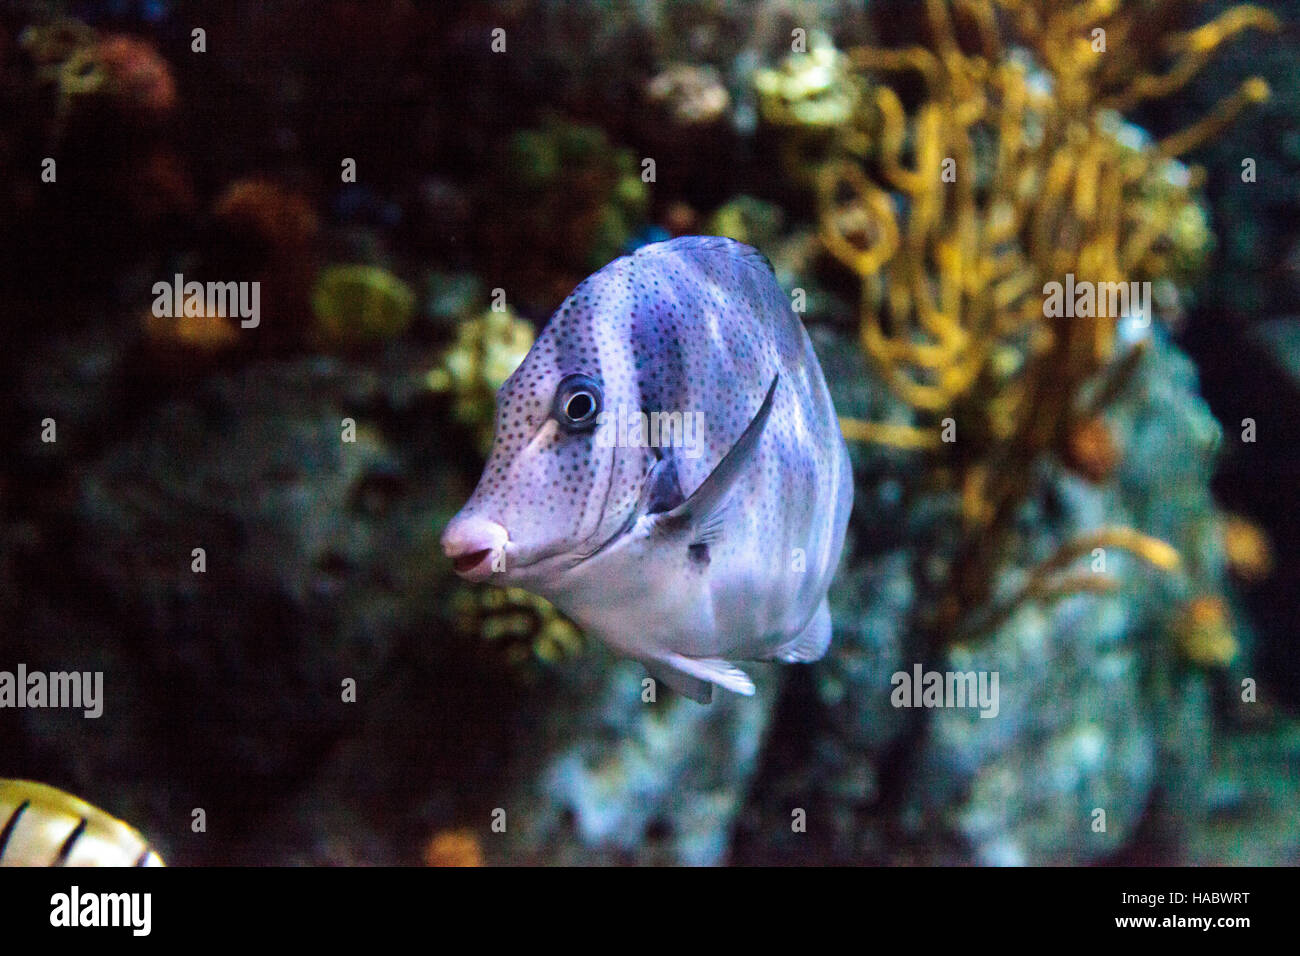 Yellowtail surgeonfish called Prionurus punctatus in a saltwater aquarium Stock Photo